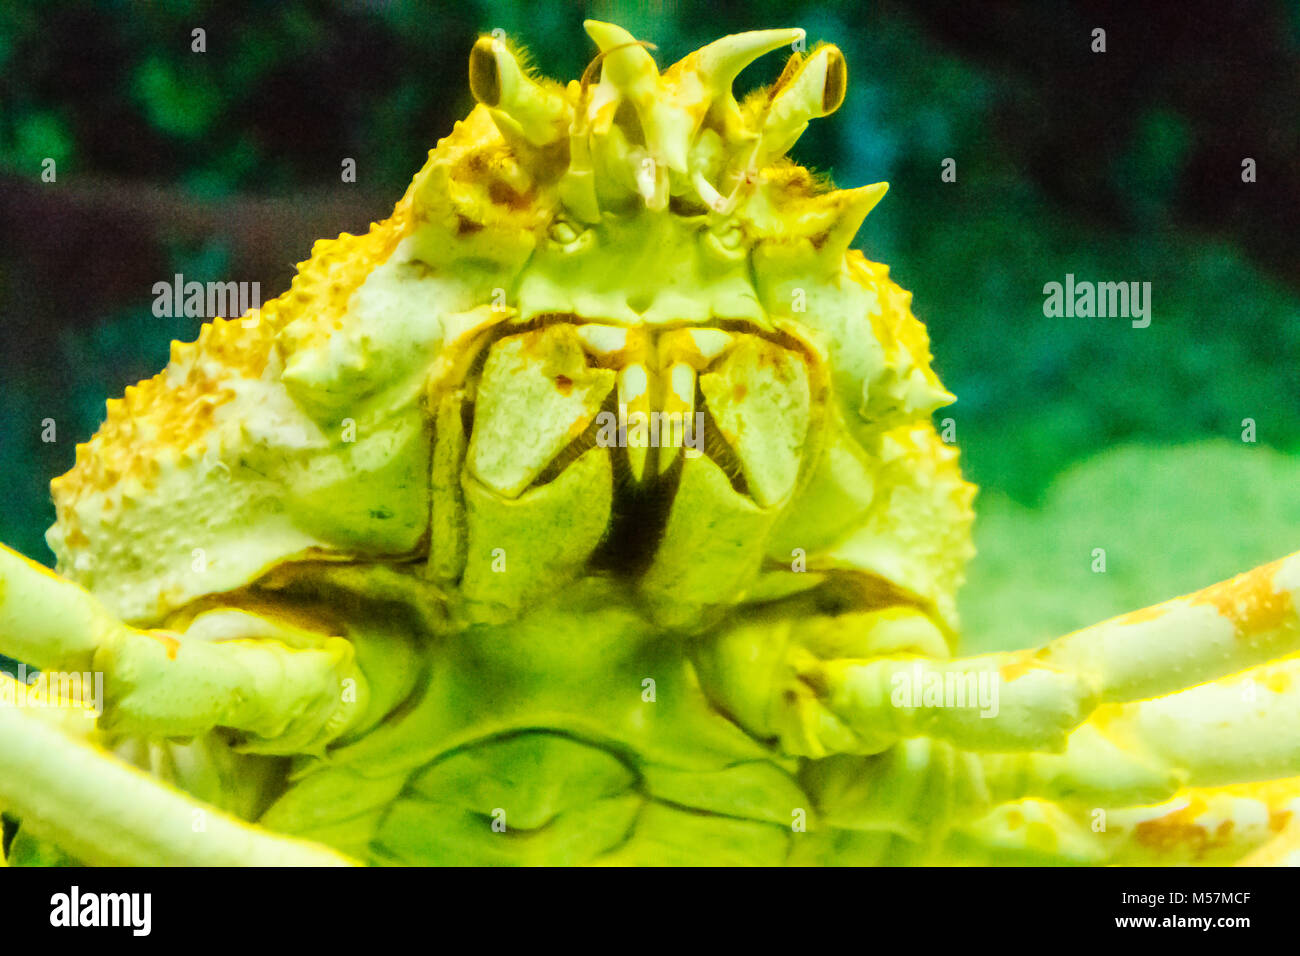 Close-up Taraba sea crabs or alaska king crab in aquarium at Pattaya city, Thailand Stock Photo